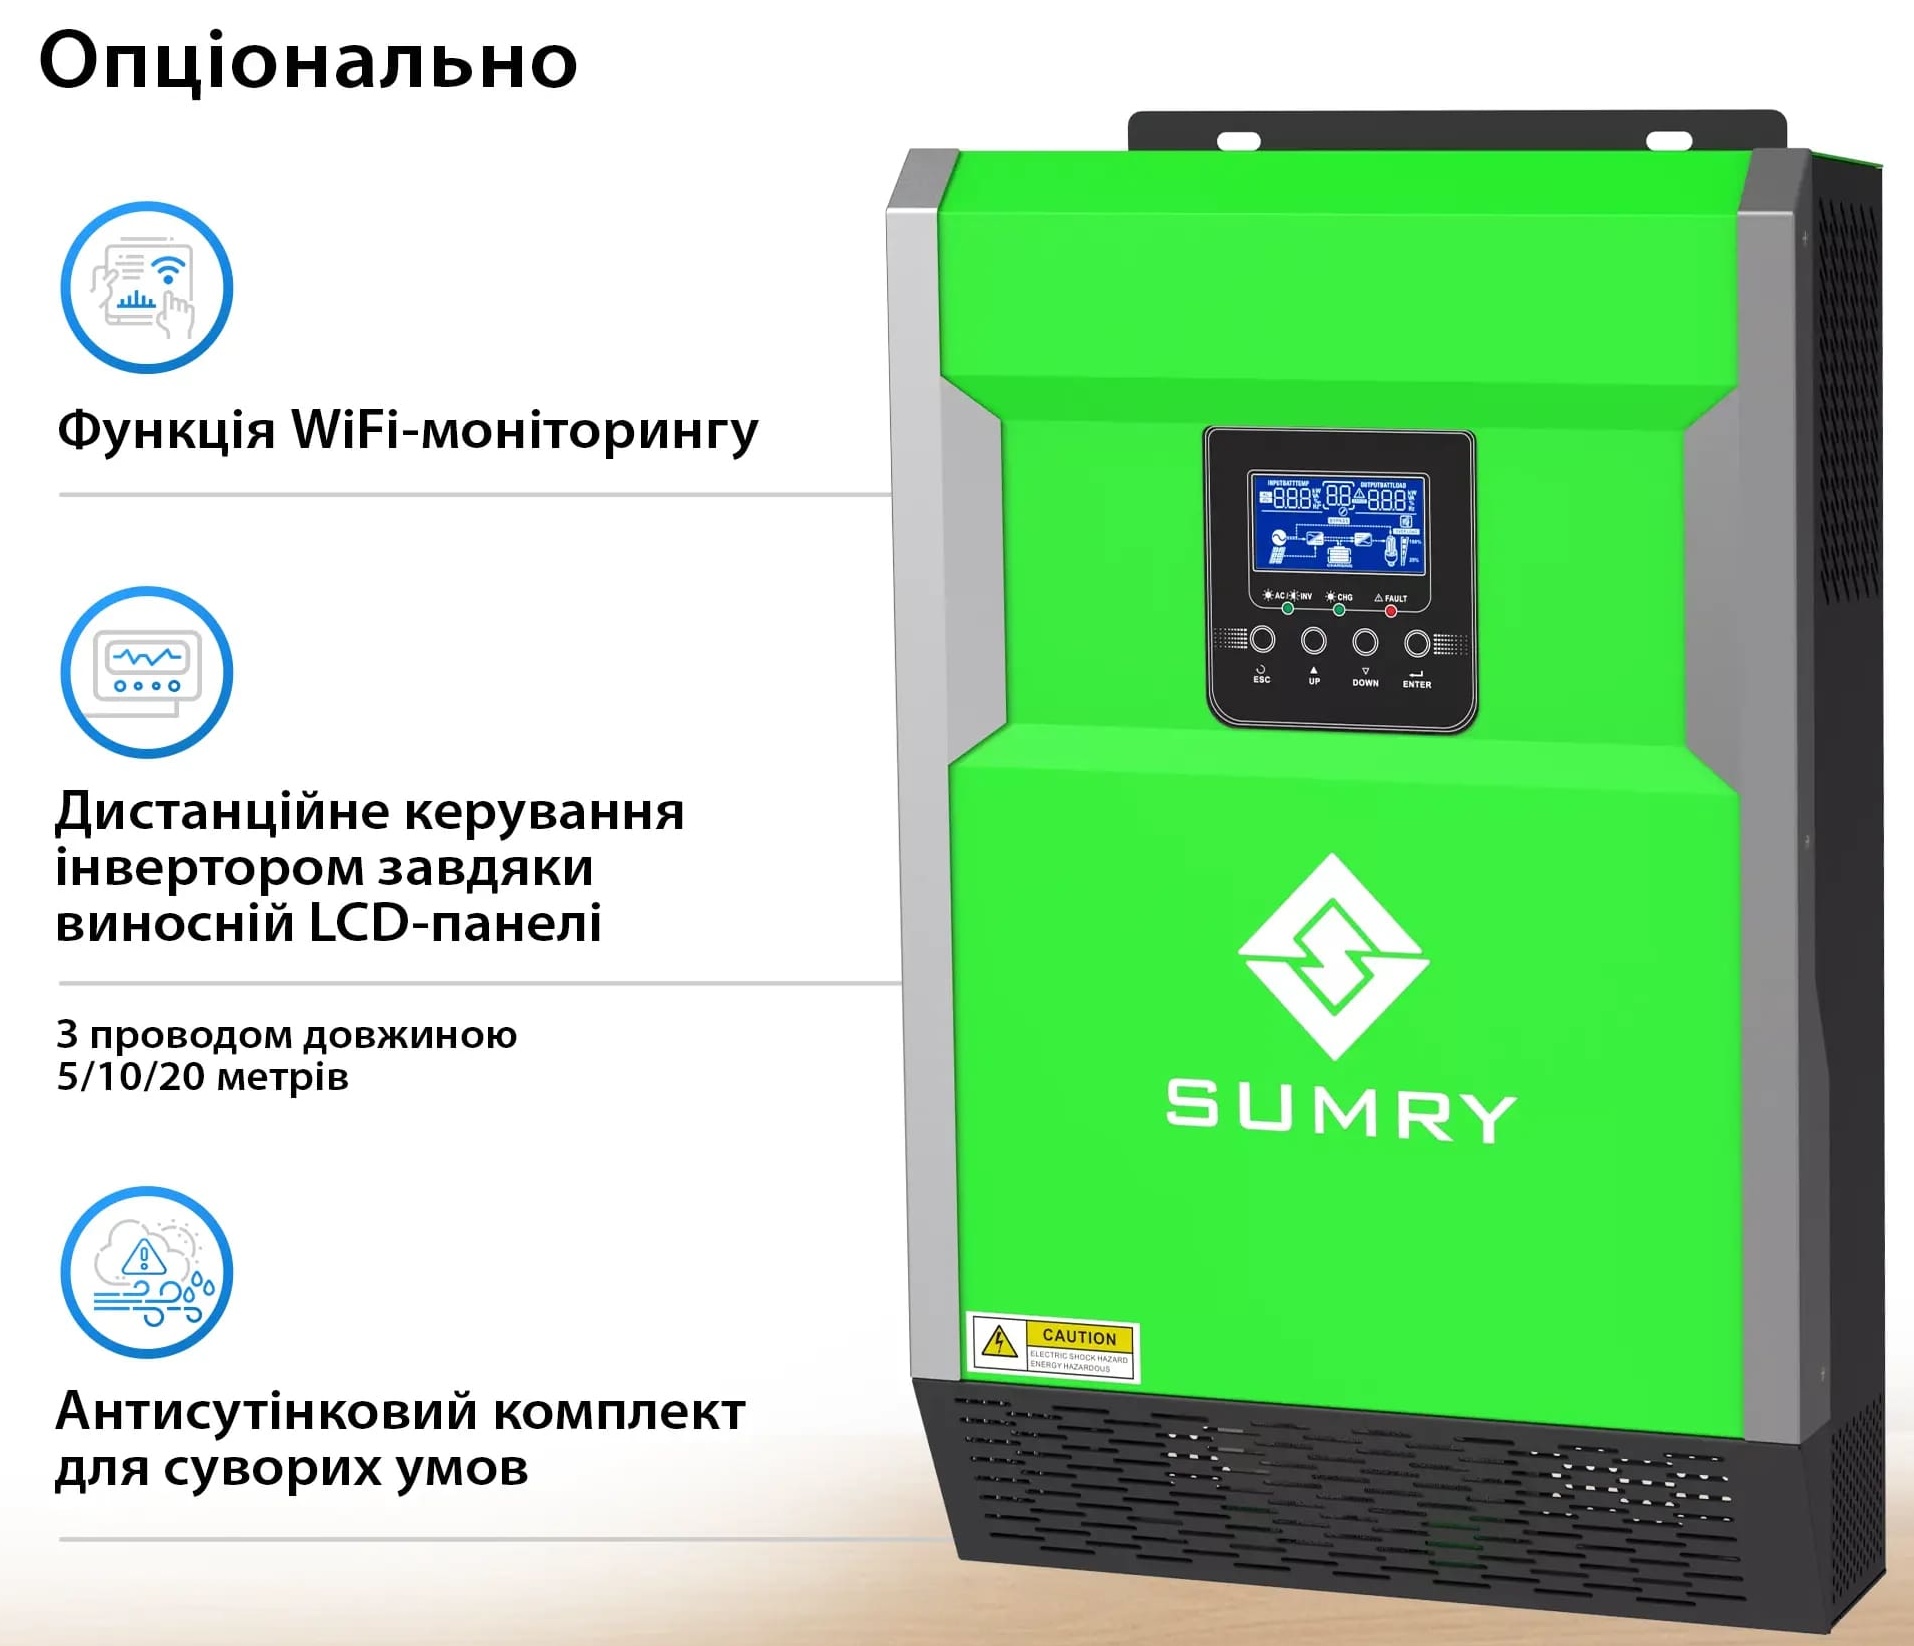 продаємо Sumry HGP-5500W в Україні - фото 4